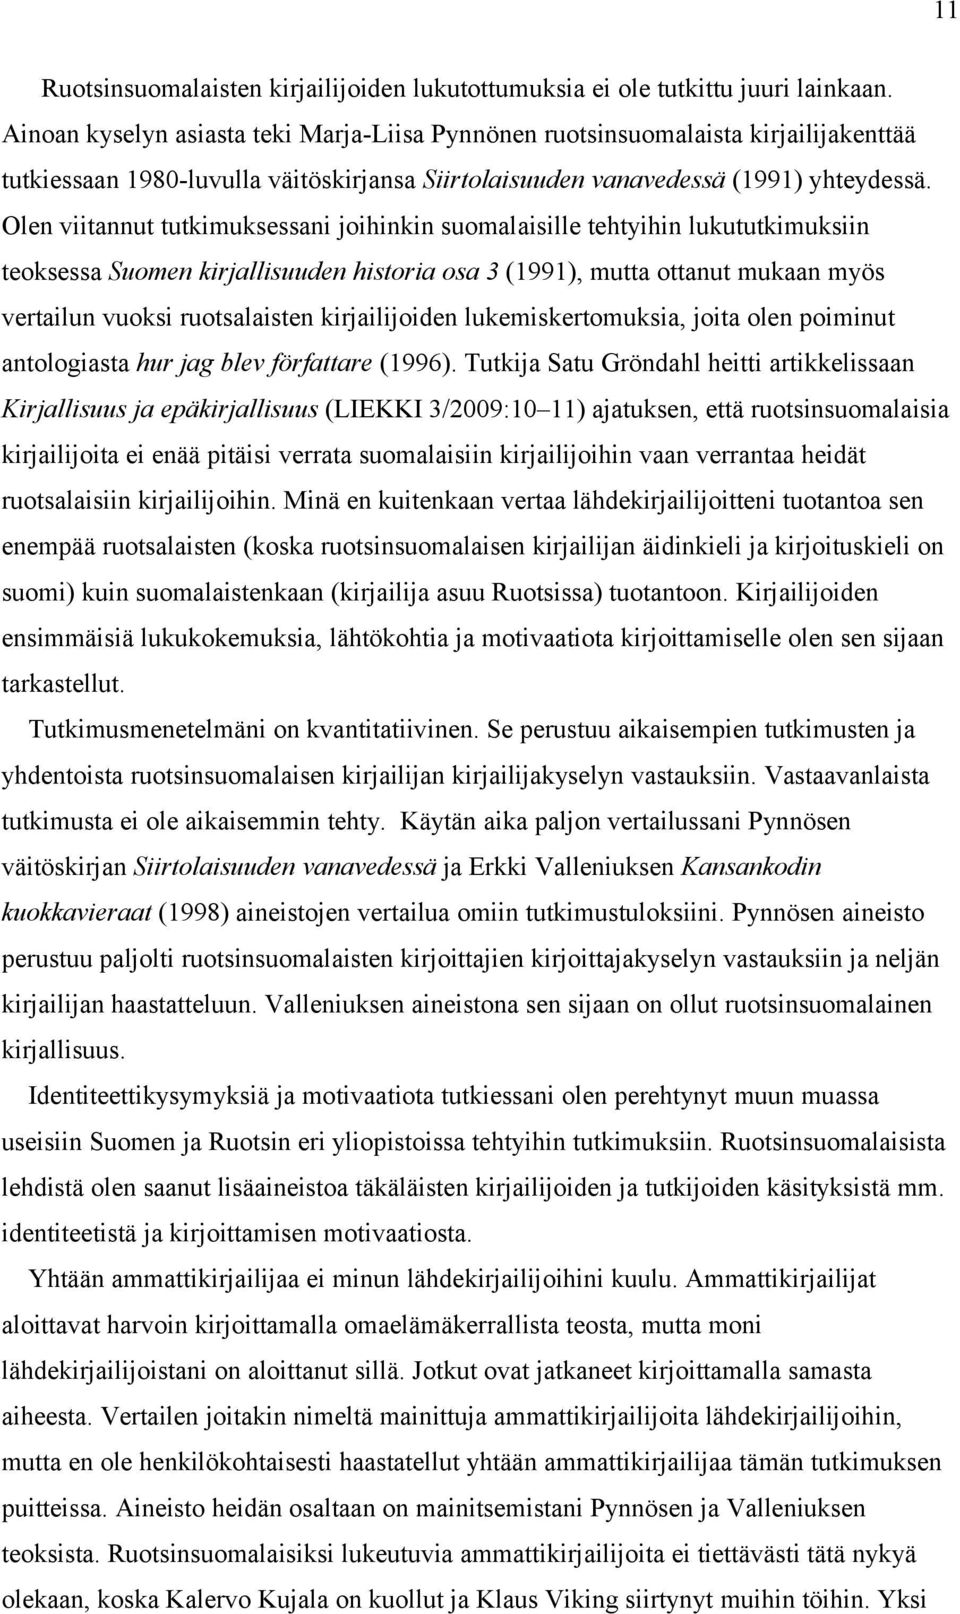 Olen viitannut tutkimuksessani joihinkin suomalaisille tehtyihin lukututkimuksiin teoksessa Suomen kirjallisuuden historia osa 3 (1991), mutta ottanut mukaan myös vertailun vuoksi ruotsalaisten